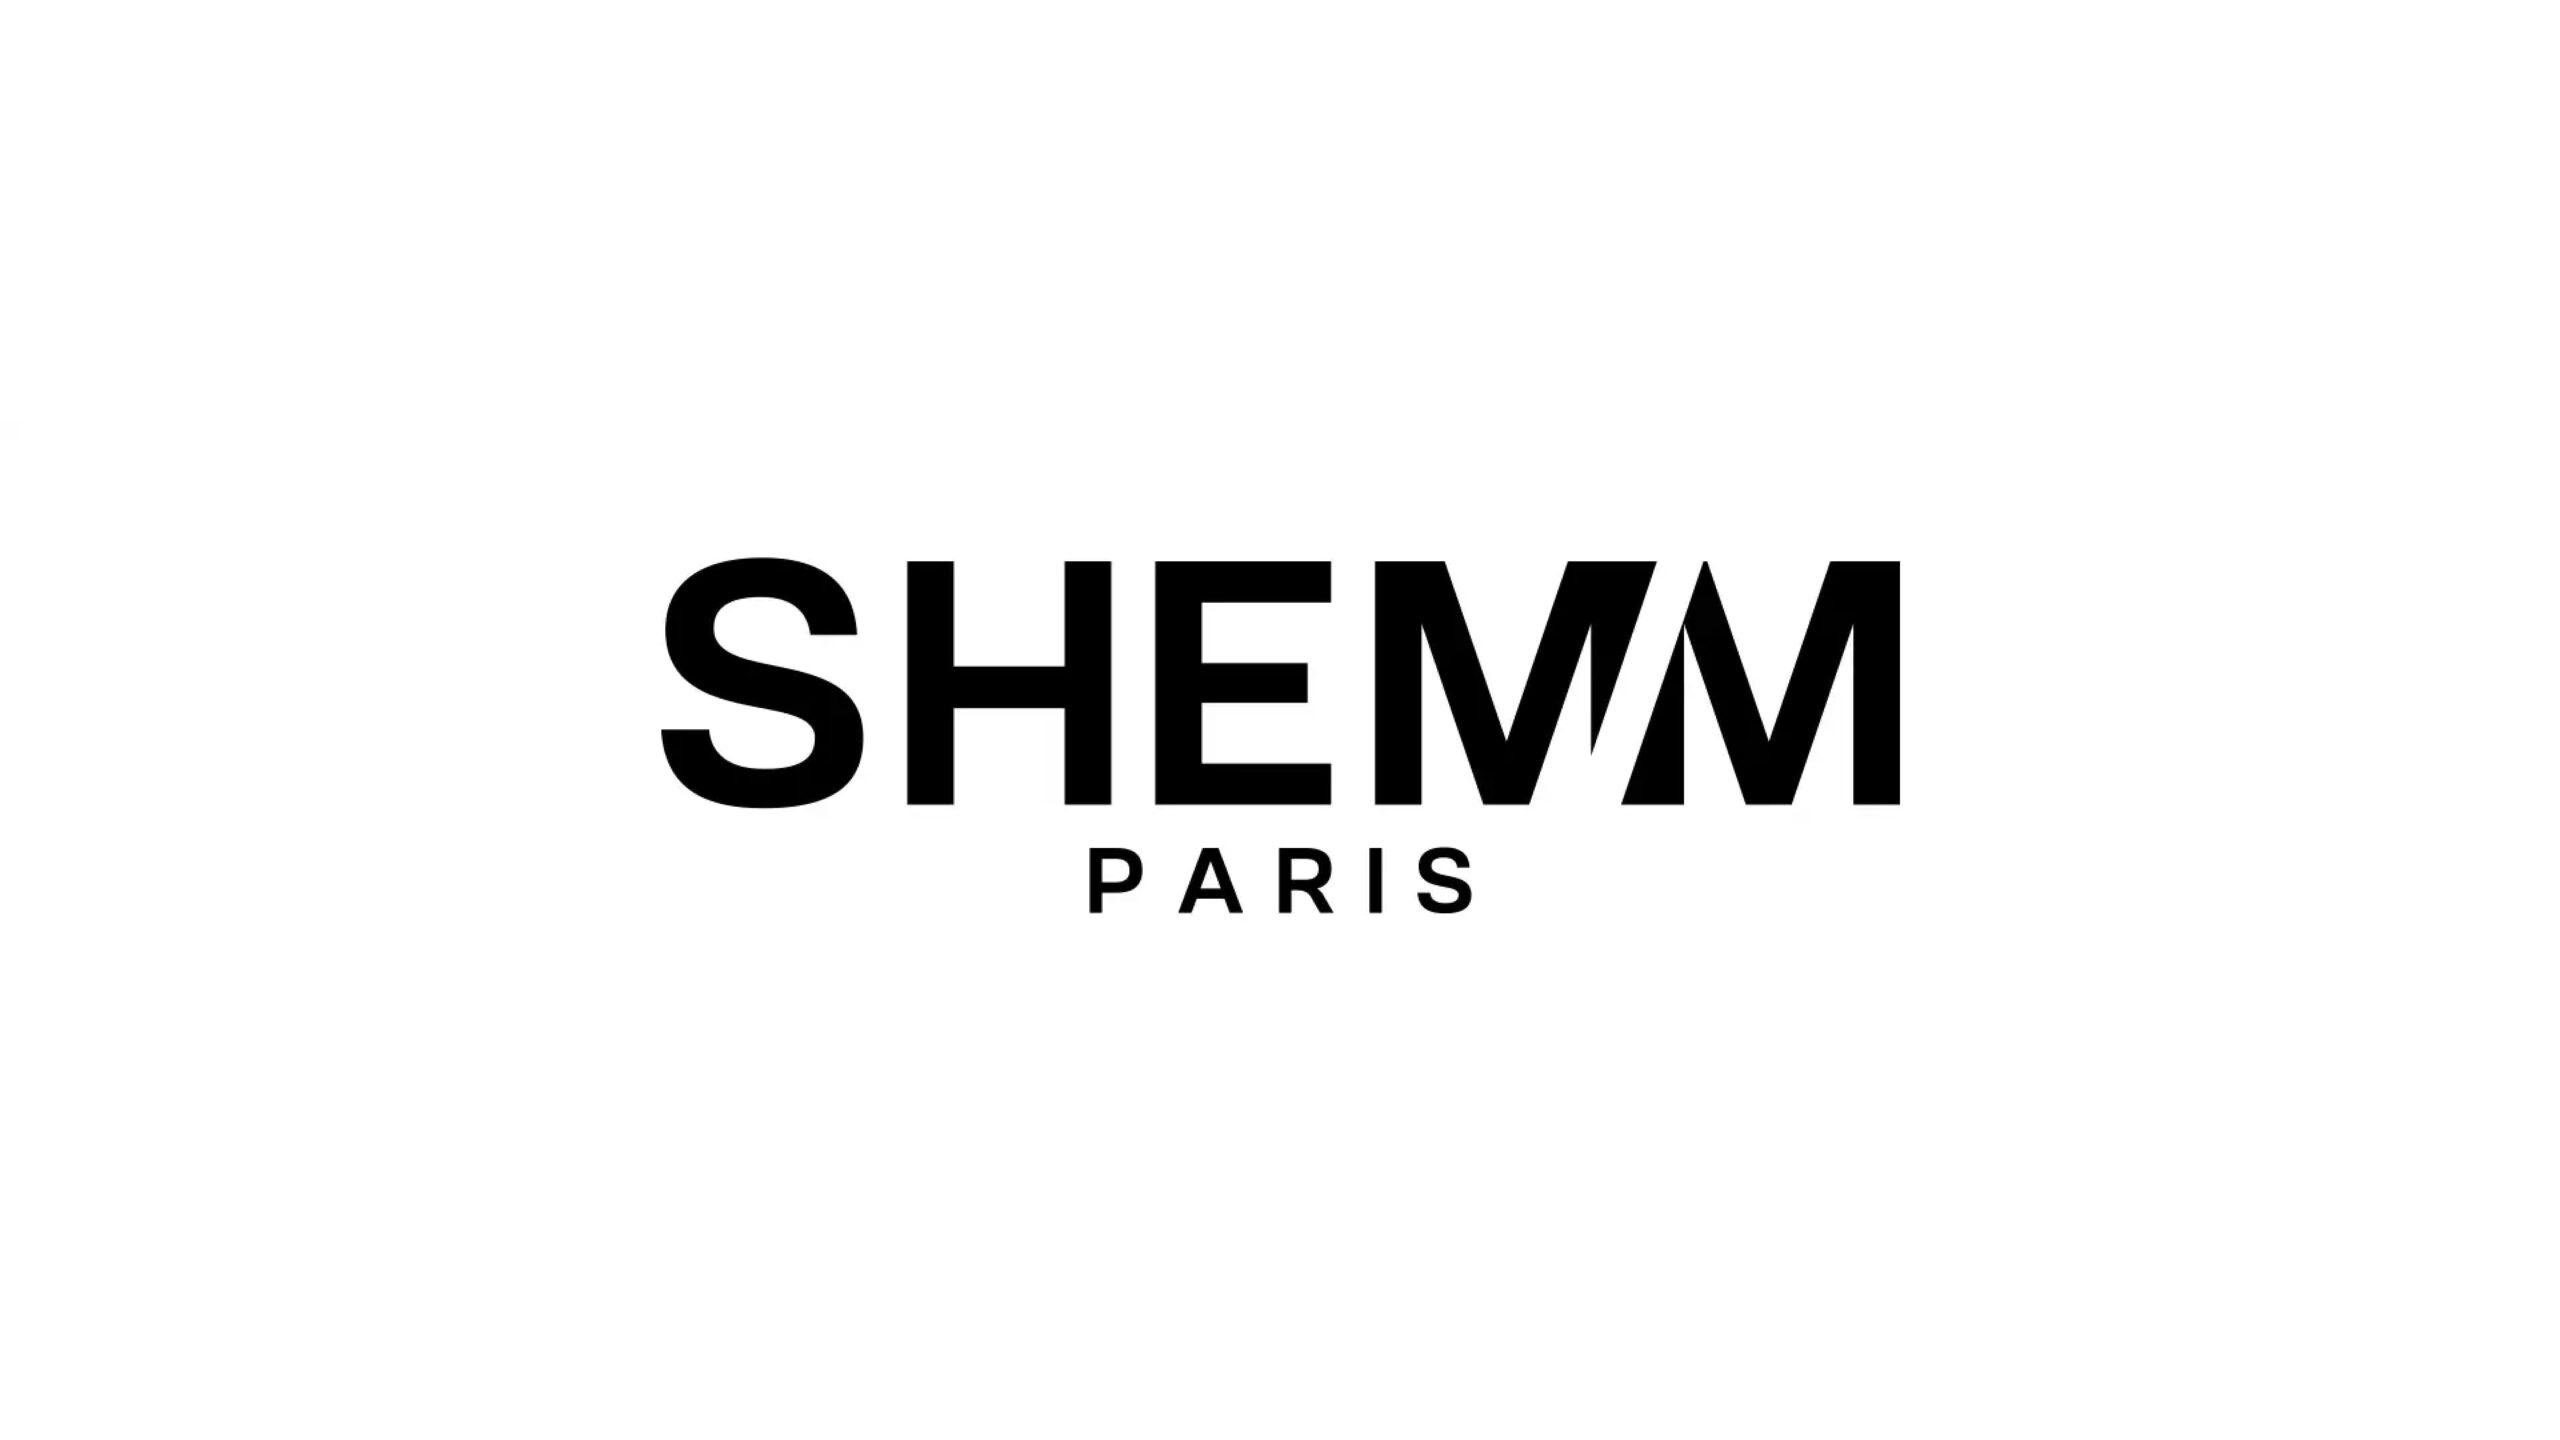 今までにない環境に配慮されたアパレルブランド株式会社SHEMMがプレシリーズAにて7,000万円の資金調達